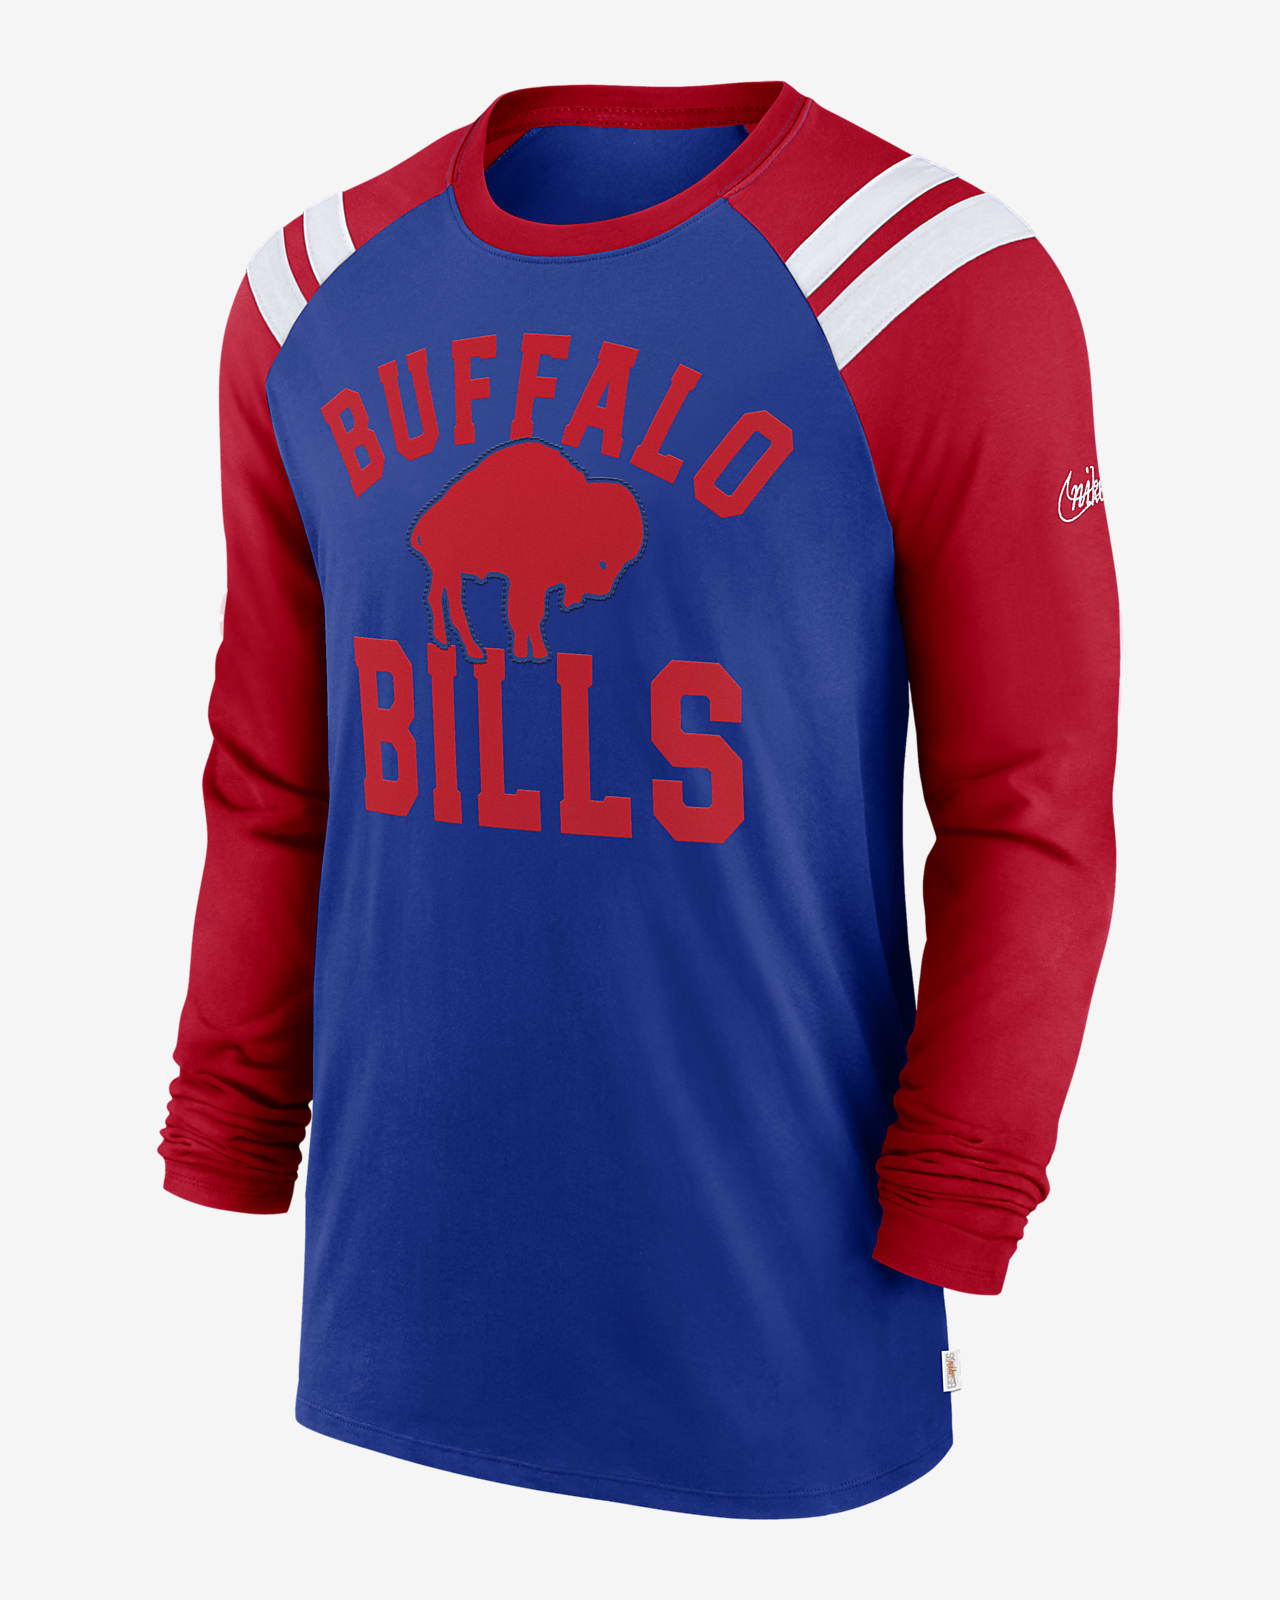 Buffalo Bills Classic Arc Fashion Men's Nike NFL Long-Sleeve T-Shirt.